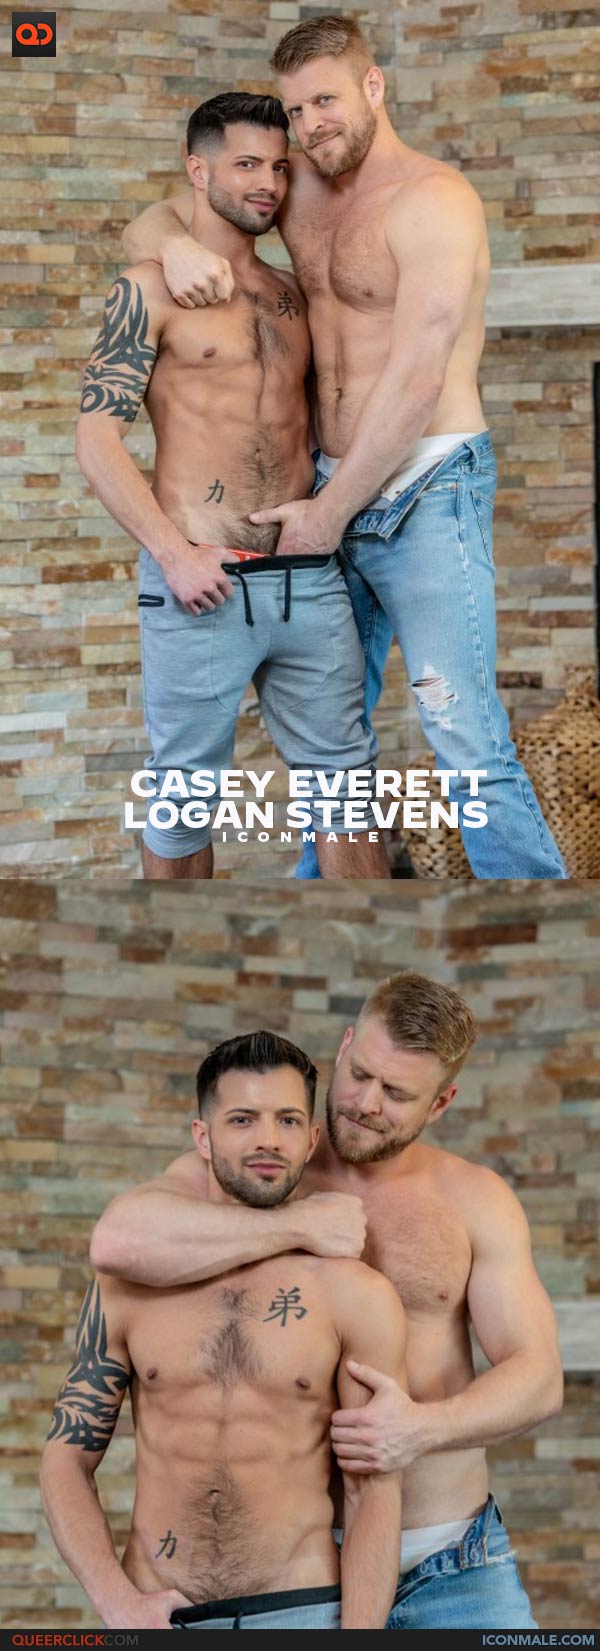 Everett photos Casey nude Gay Casey